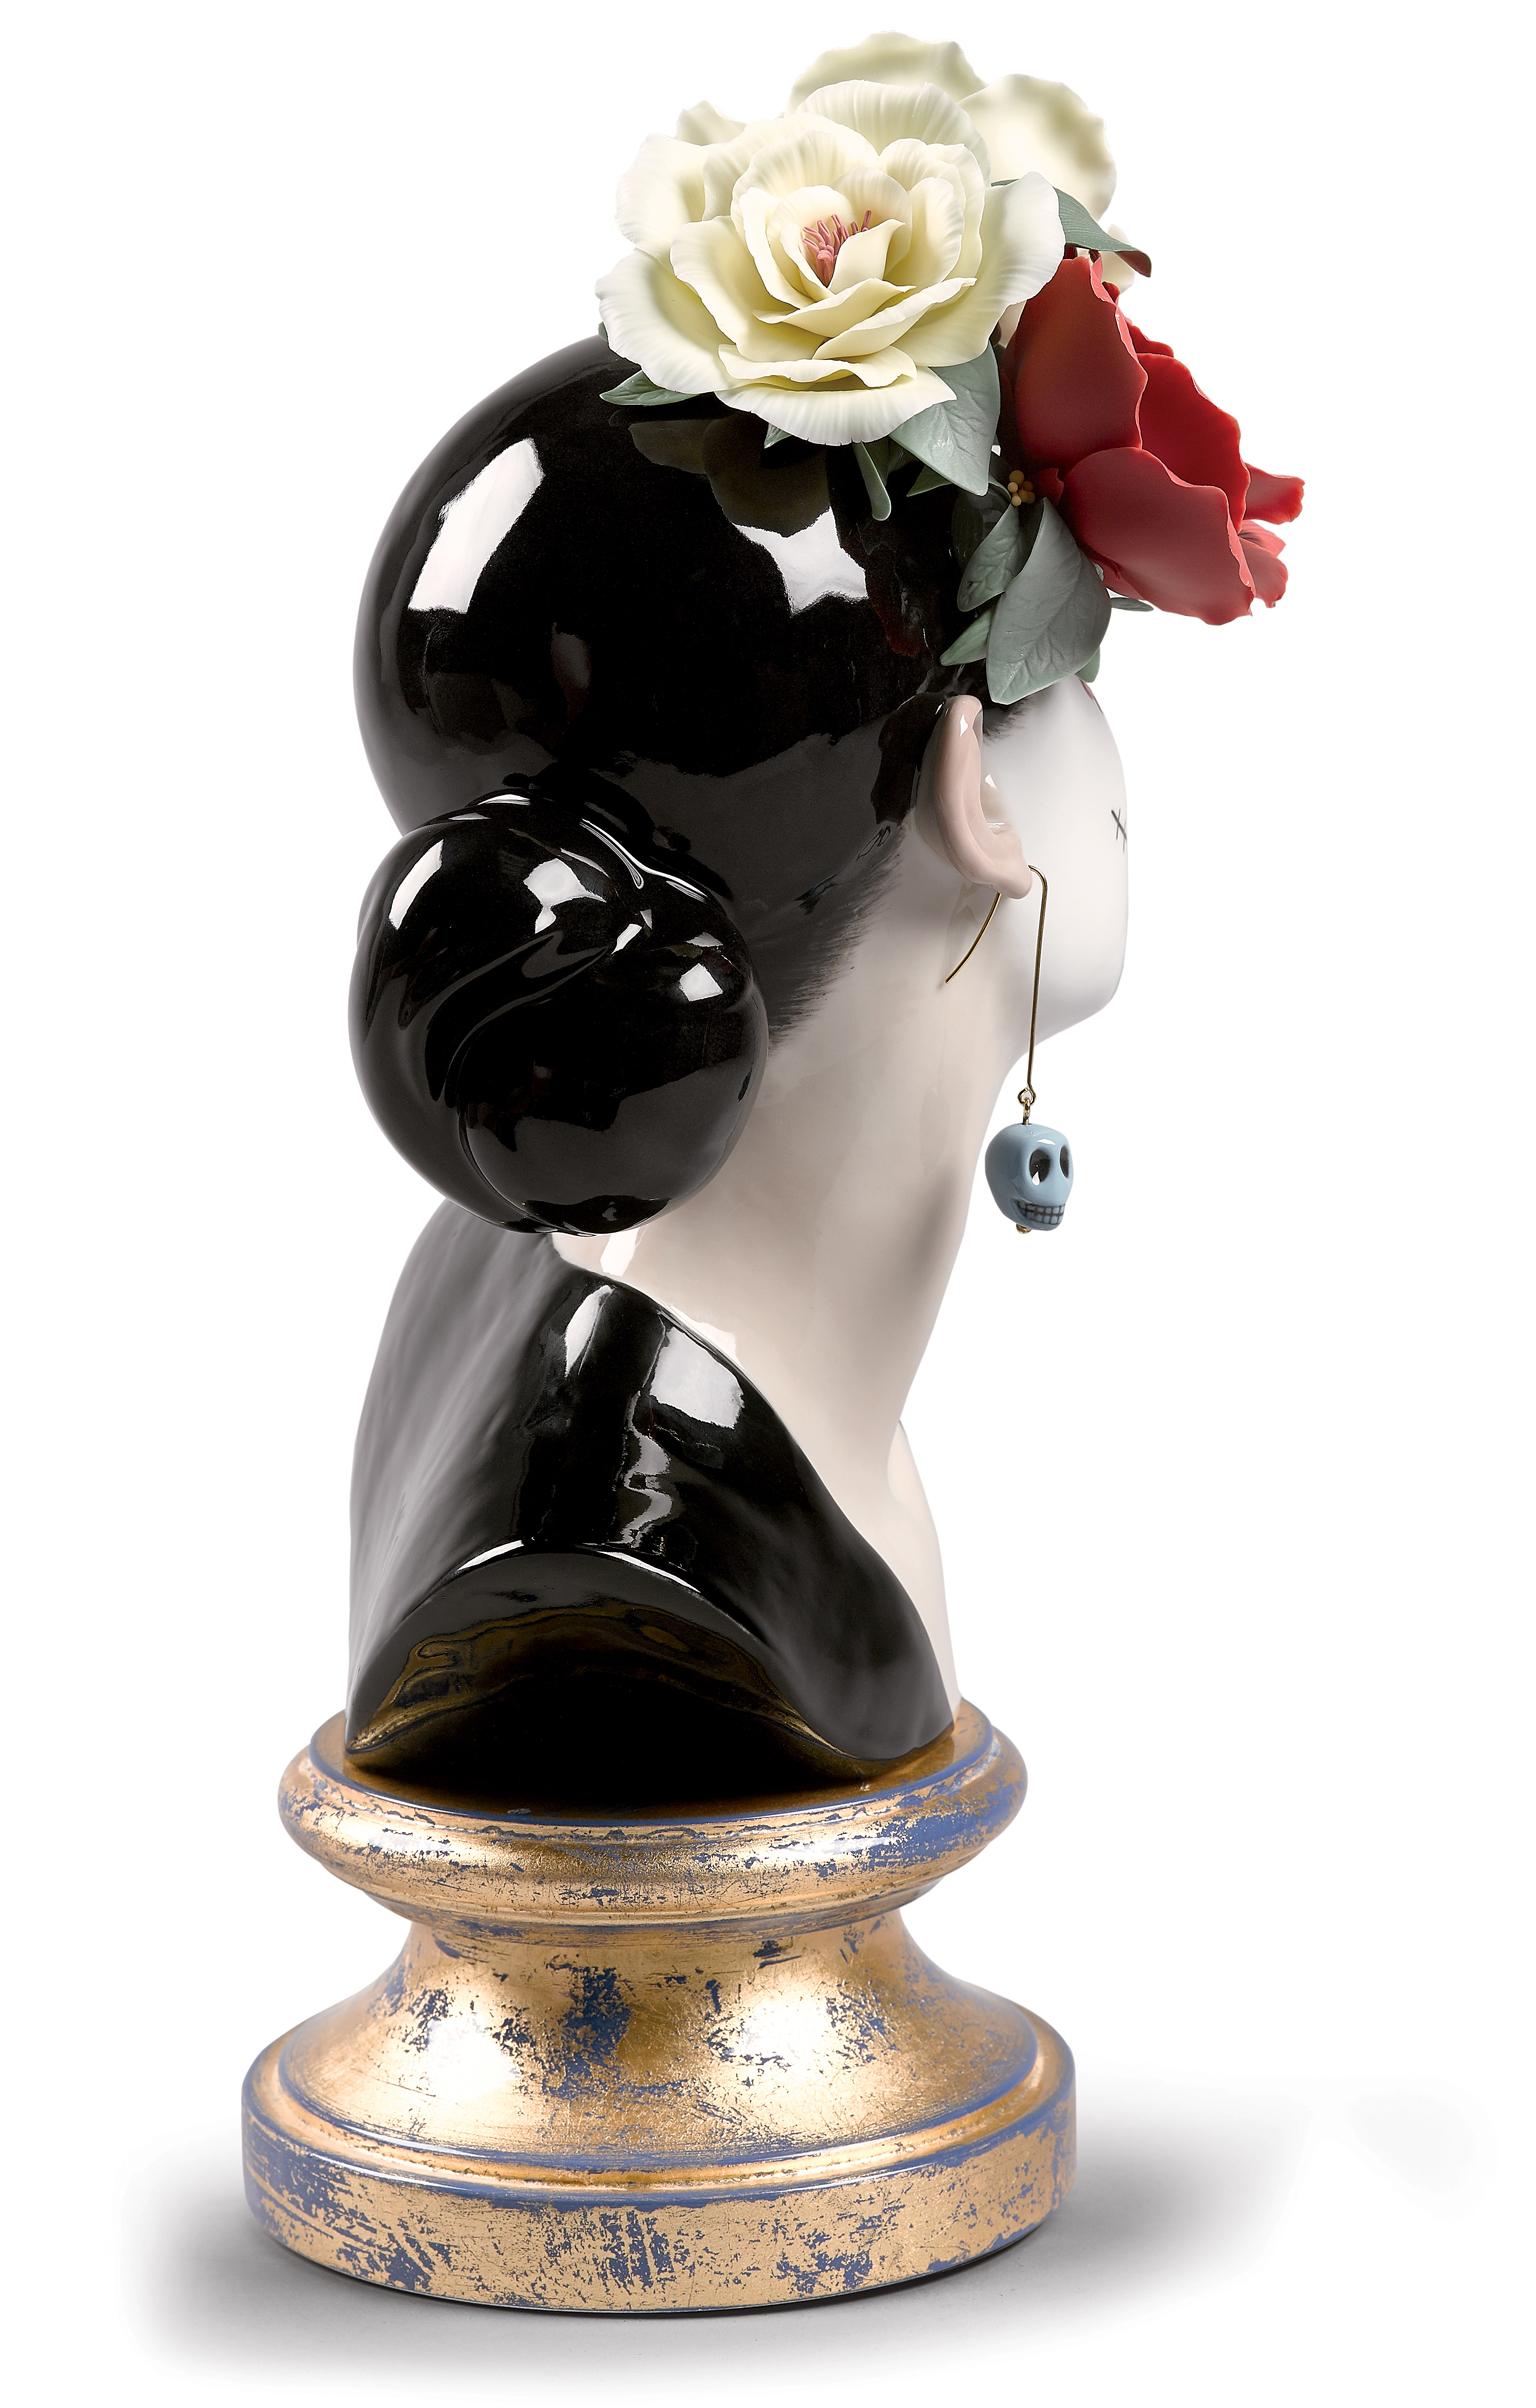 Limitierte Auflage der mexikanischen Figur Bella Catrina aus schwarzem, glänzendem Porzellan, geschmückt mit drei handgefertigten Blumen. Die Menschen in Mexiko haben eine besondere Beziehung zum Tod, der Teil der Kultur und des täglichen Lebens in